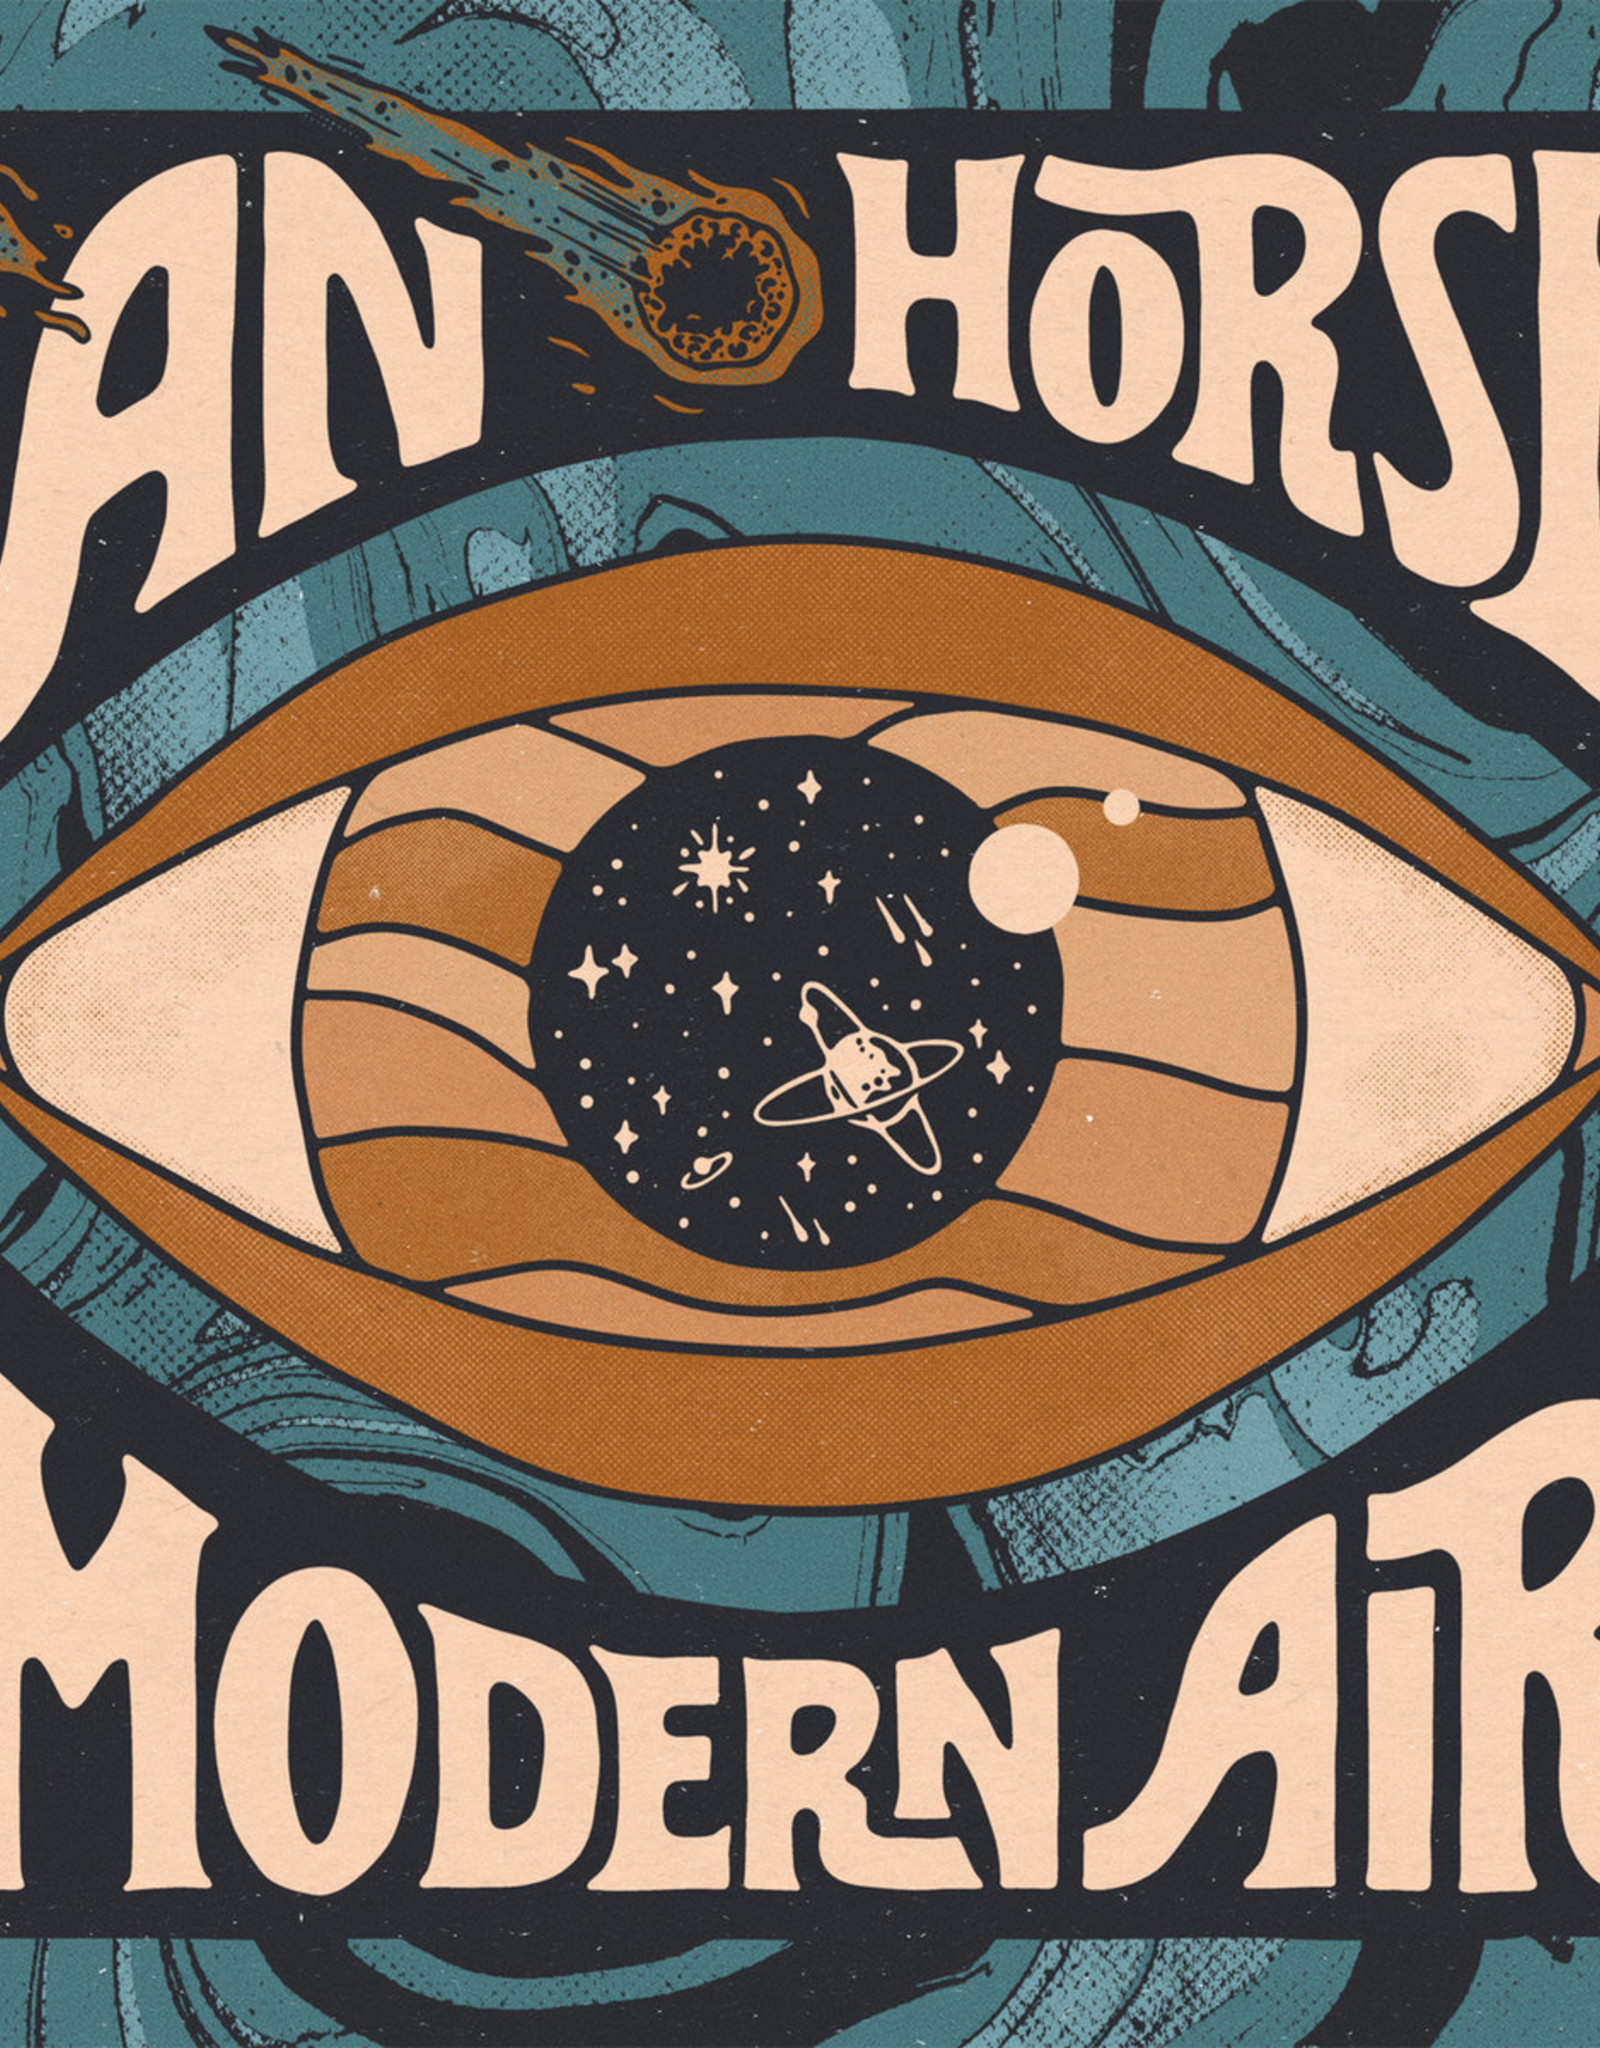 An Horse - Modern Air